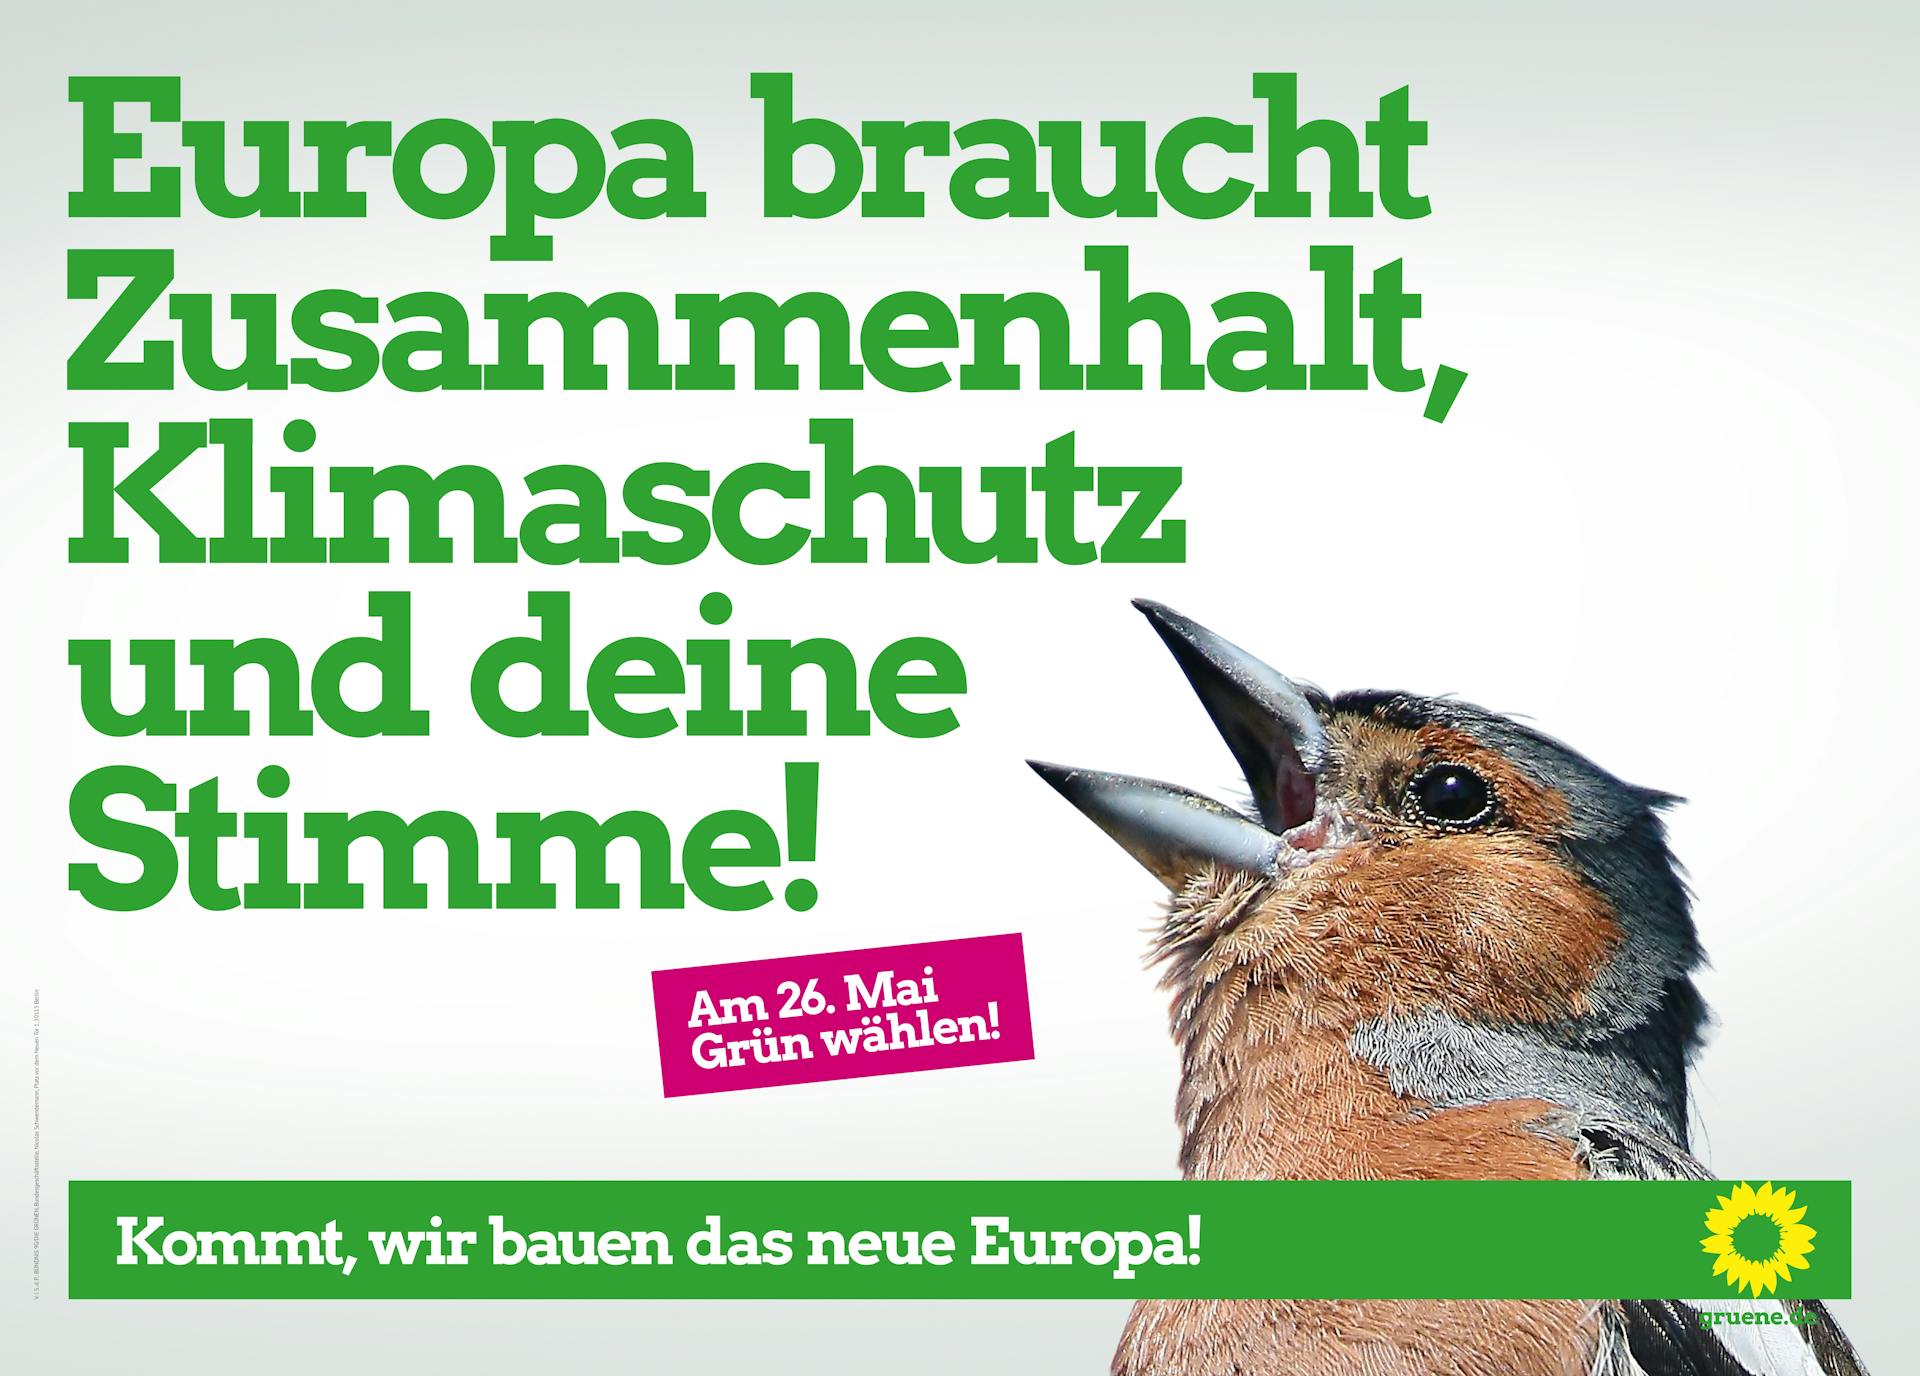 Europawahlplakat 2019 mit einem Vogel mit offenem Schnabel. Text: "Europa braucht Zusammenhalt, Klimaschutz und deine Stimme! Am 26. Mai Grün wählen!", darunter der Slogan: "Kommt, wir bauen das neue Europa!"